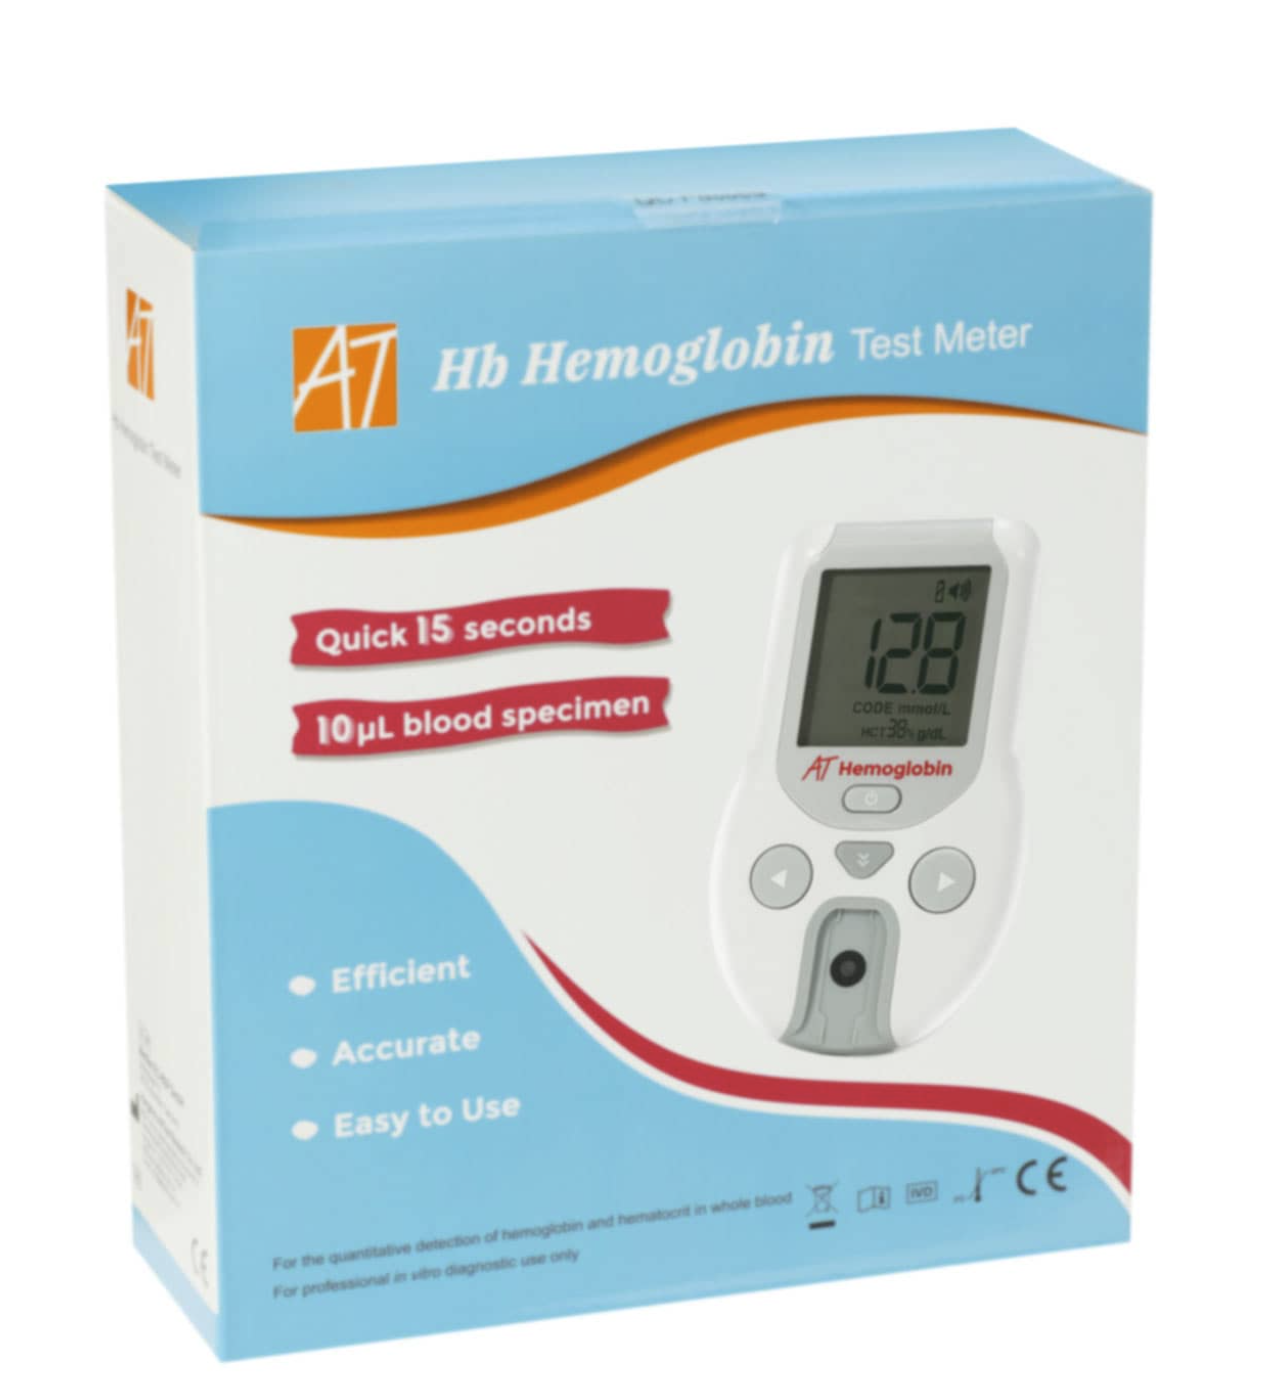 haemoglobin meter